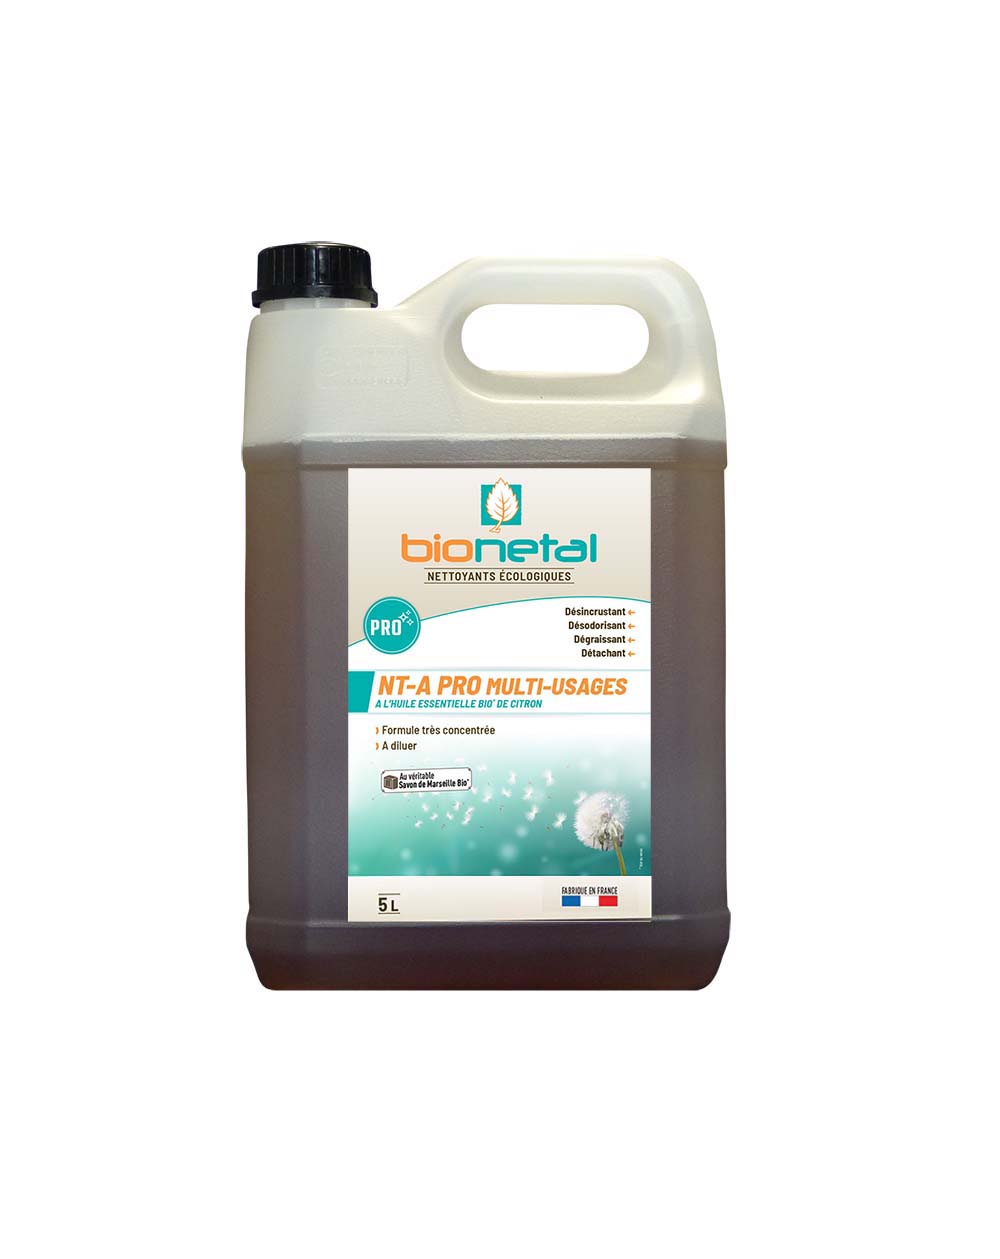 Nettoyant dégraissant multi usages NT-A PRO – Produit concentré (à diluer)  – Bionetal Nettoyants écologiques